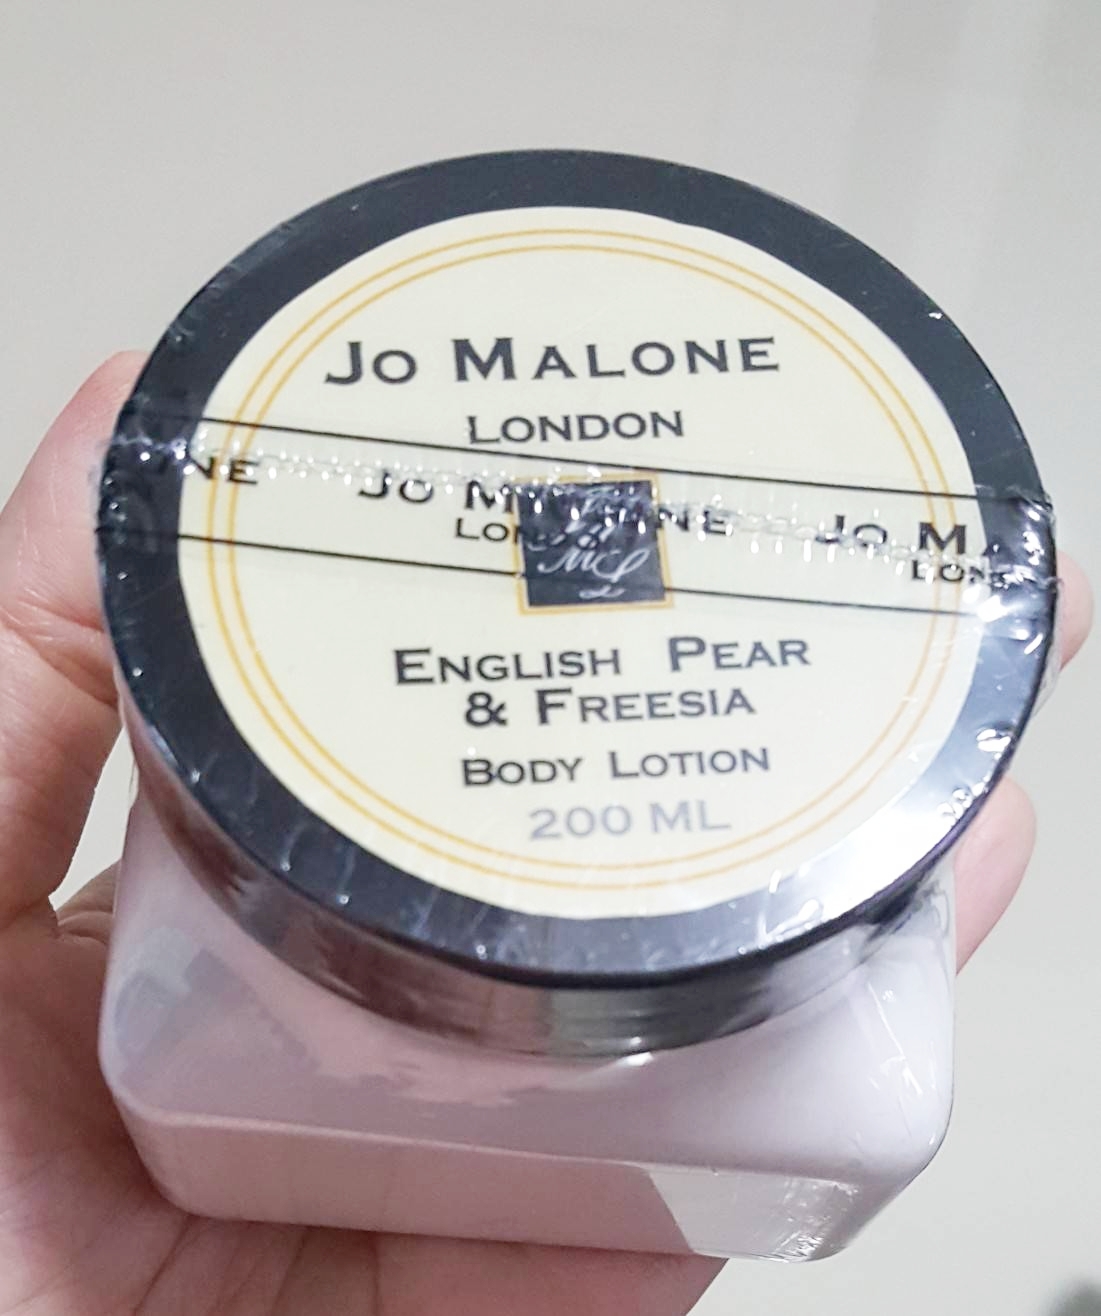 ครีมน้ำหอม Jo Malone English pear  Freesia cologne Body Lotion ขนาดใหม่เพิ่มปริมาณเป็น 250ml.